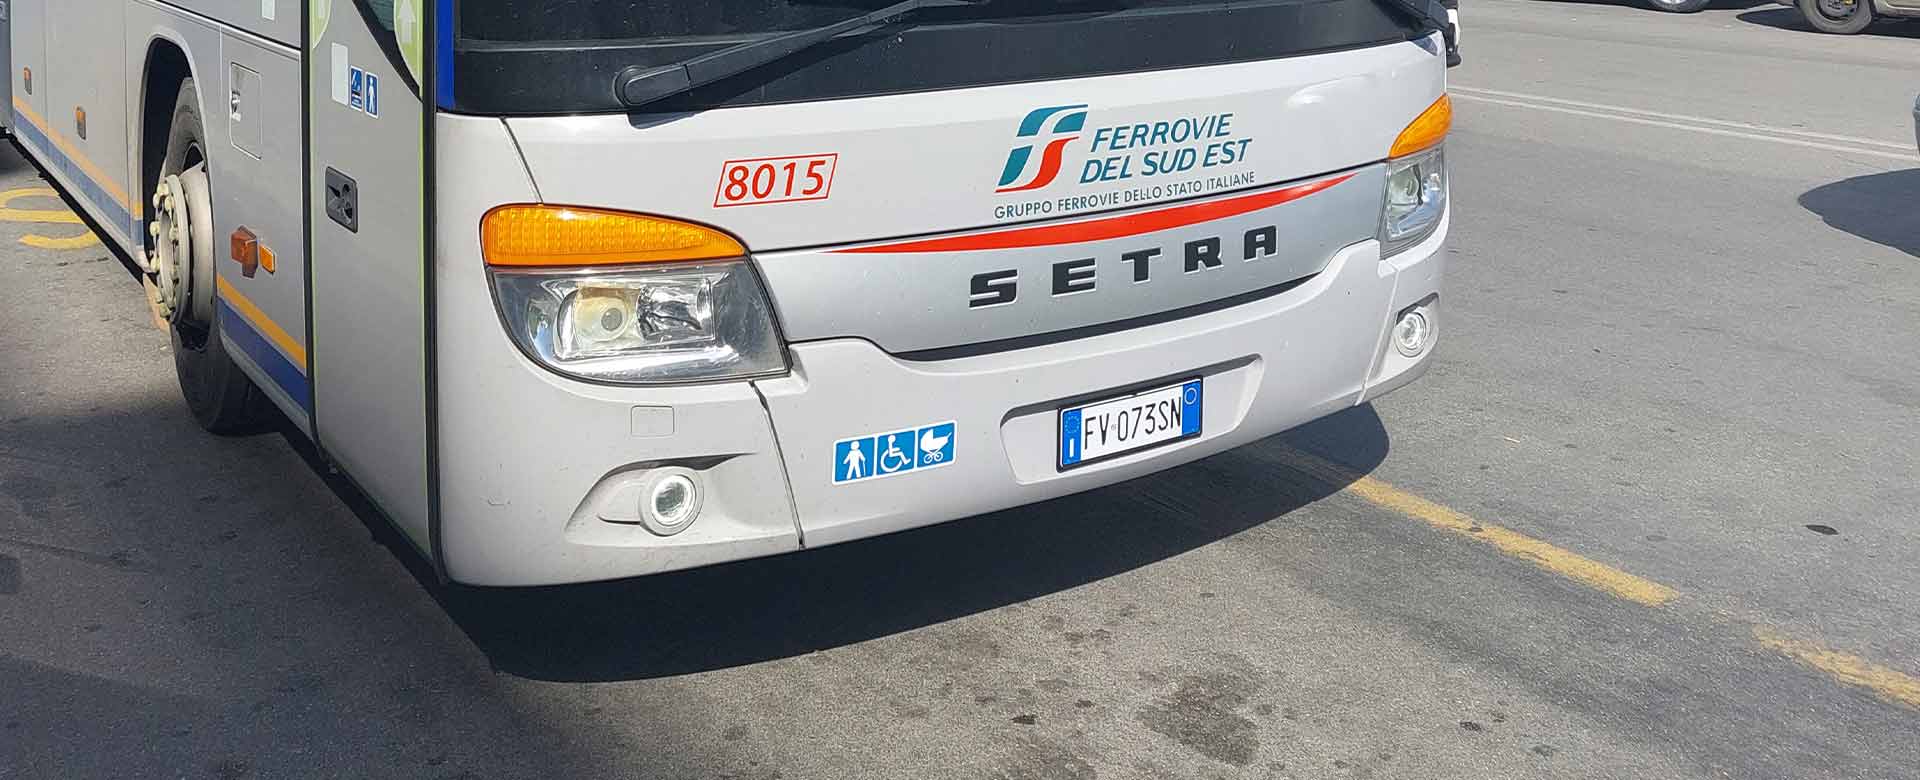 Bus FSE